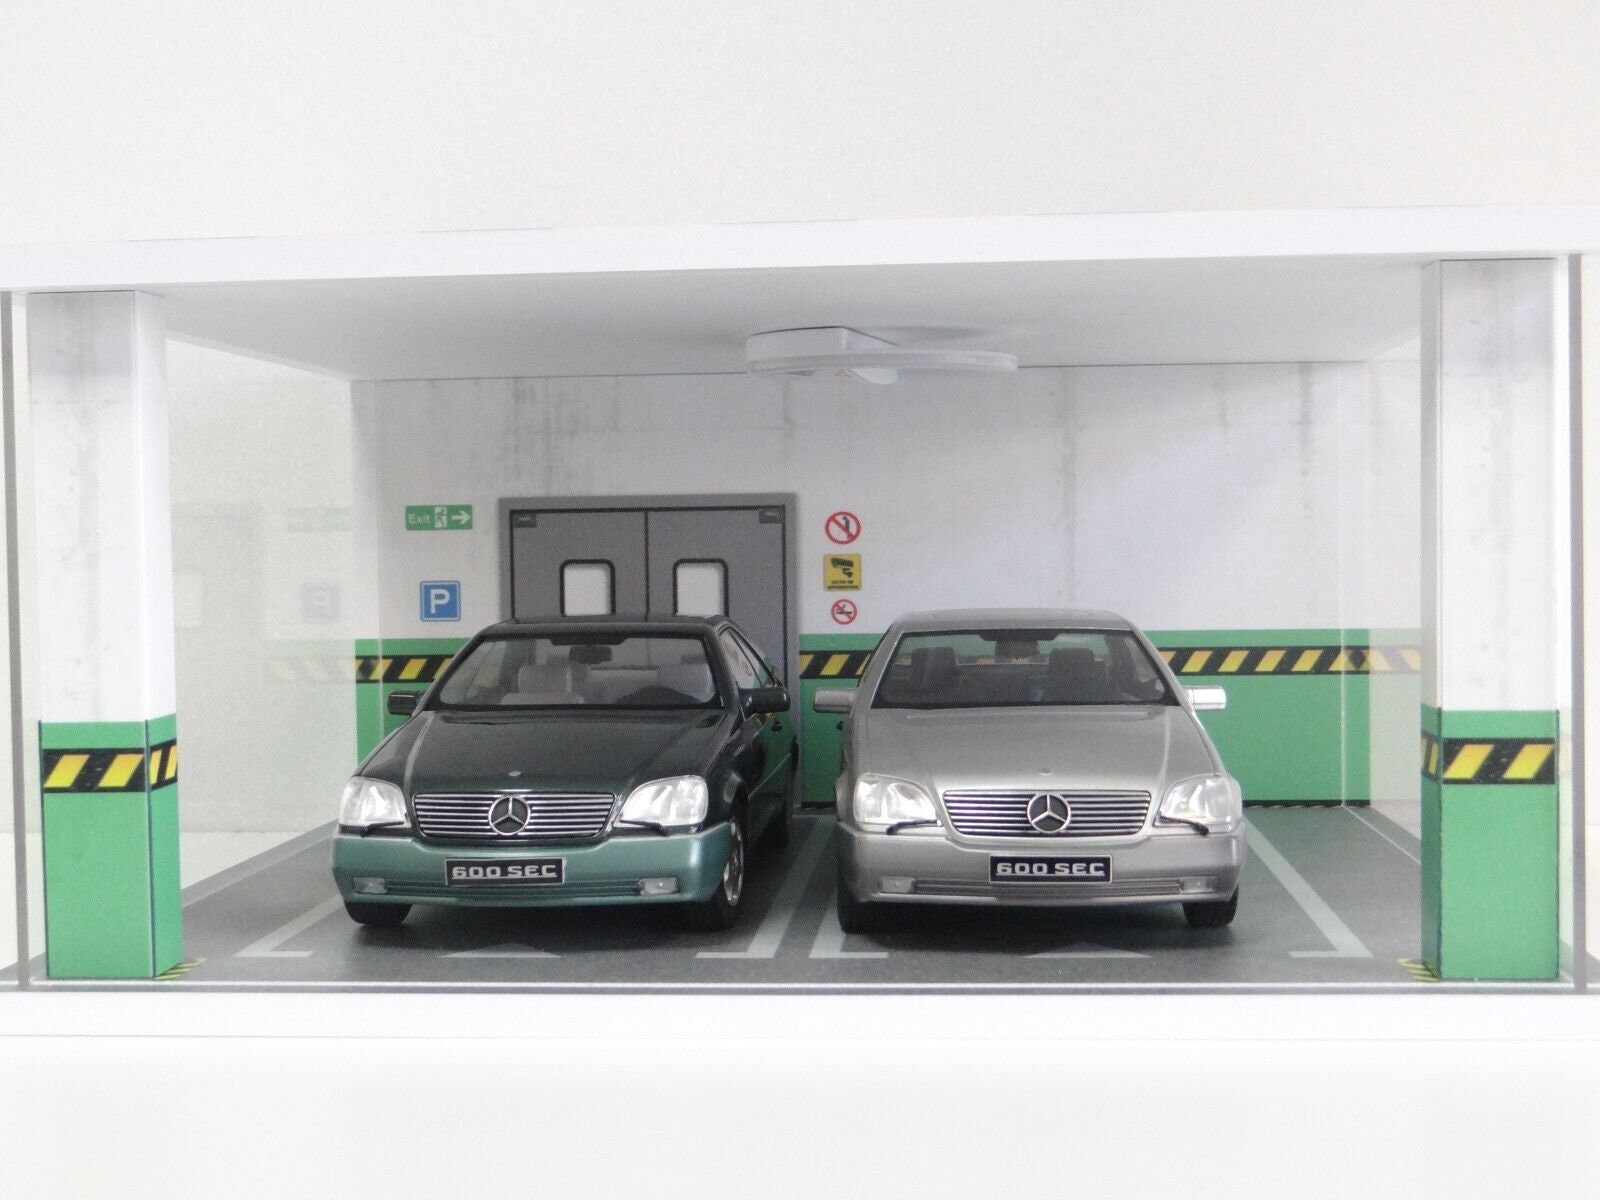 Vitrine de voiture modèle à l'échelle 1/18 – Vitrine de garage de voiture  1:18 avec couvercle en acrylique transparent et éclairage LED pour voitures  moulées sous pression, 2 parkings vert : 